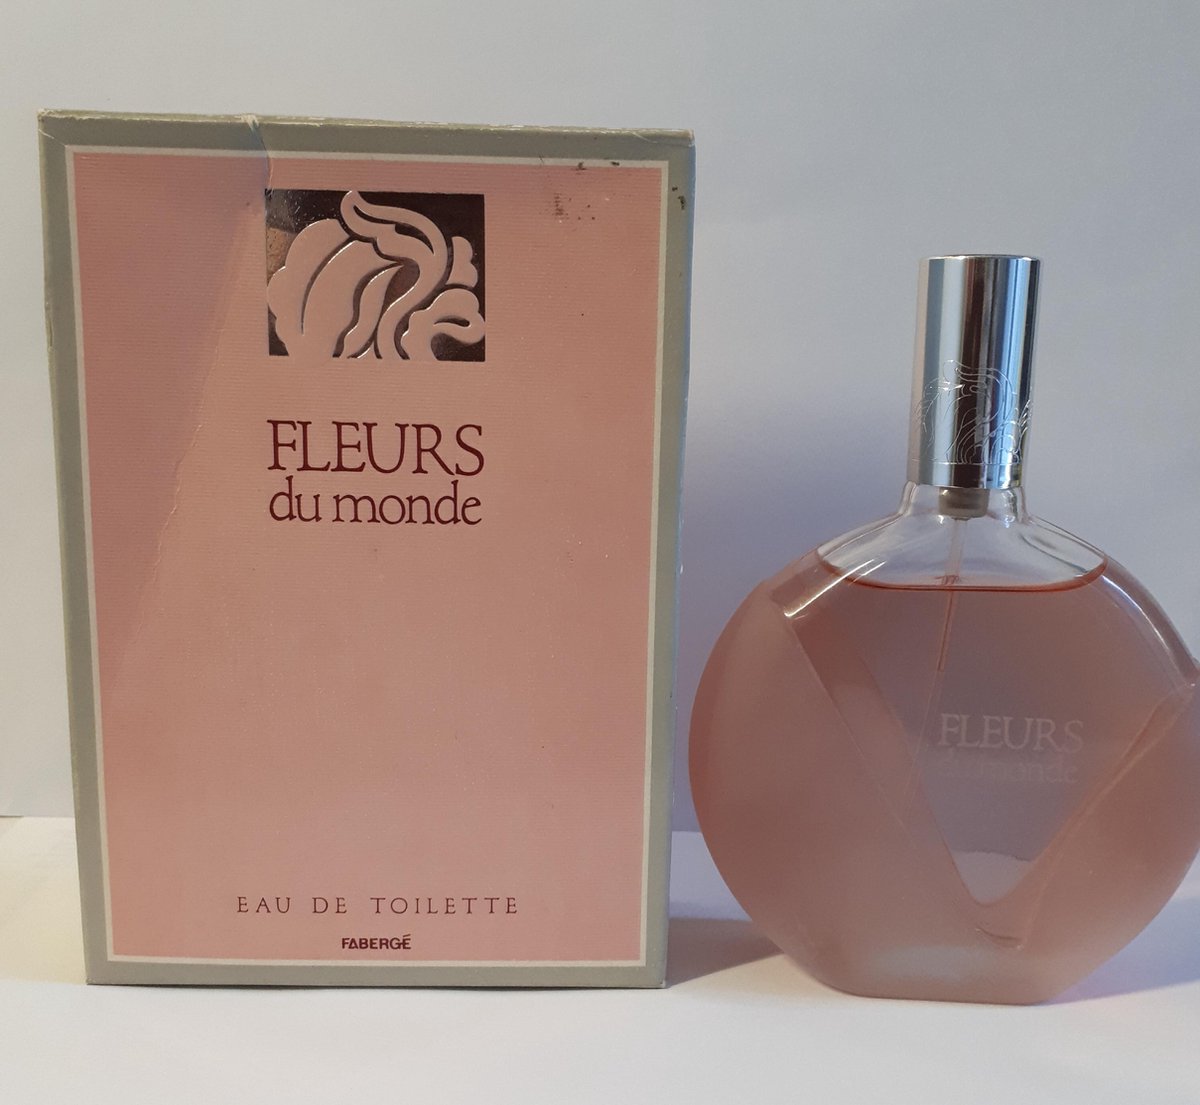 FLEURS DU MONDE. Faberge, Eau de toilette, 25 ml, spray, Vintage